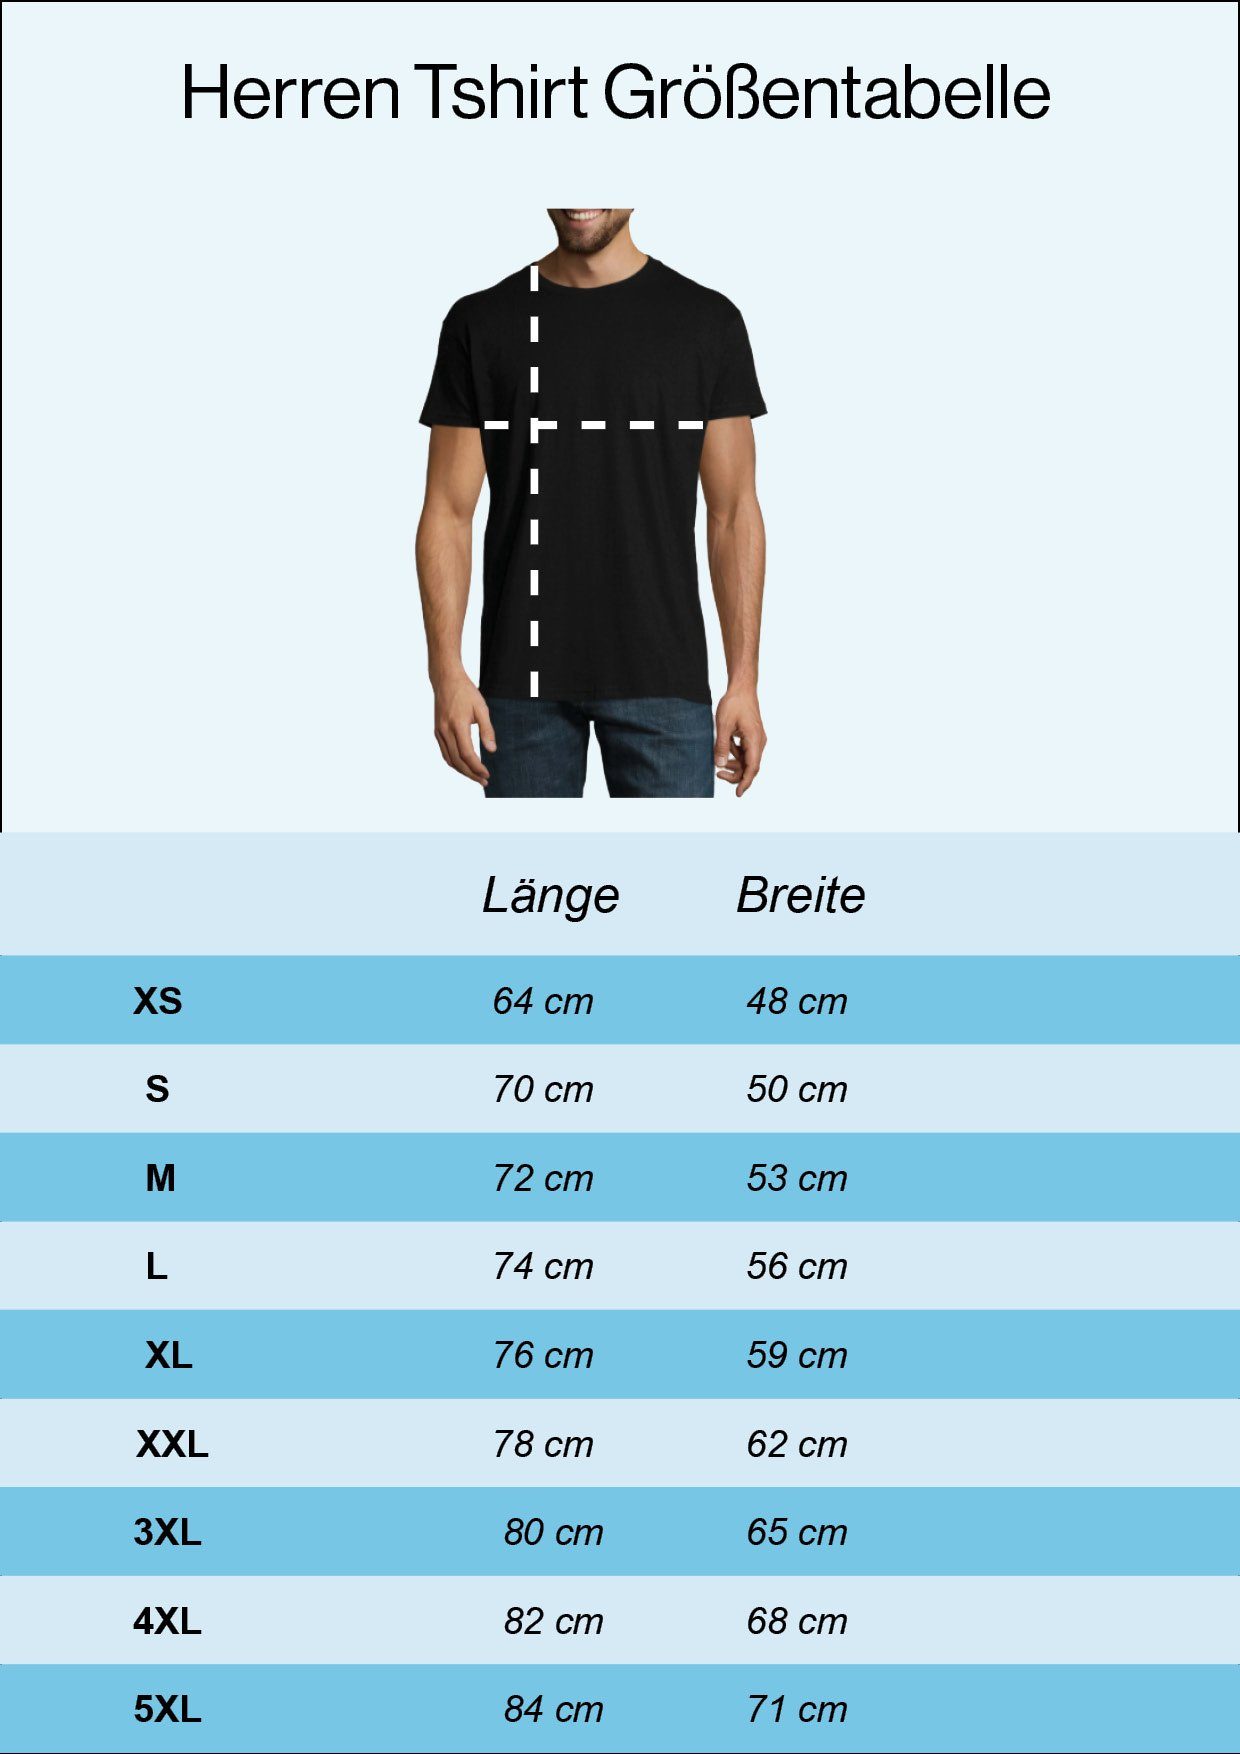 Youth Designz T-Shirt Dog Security Shirt Herren Frontprint trendigem mit Navyblau